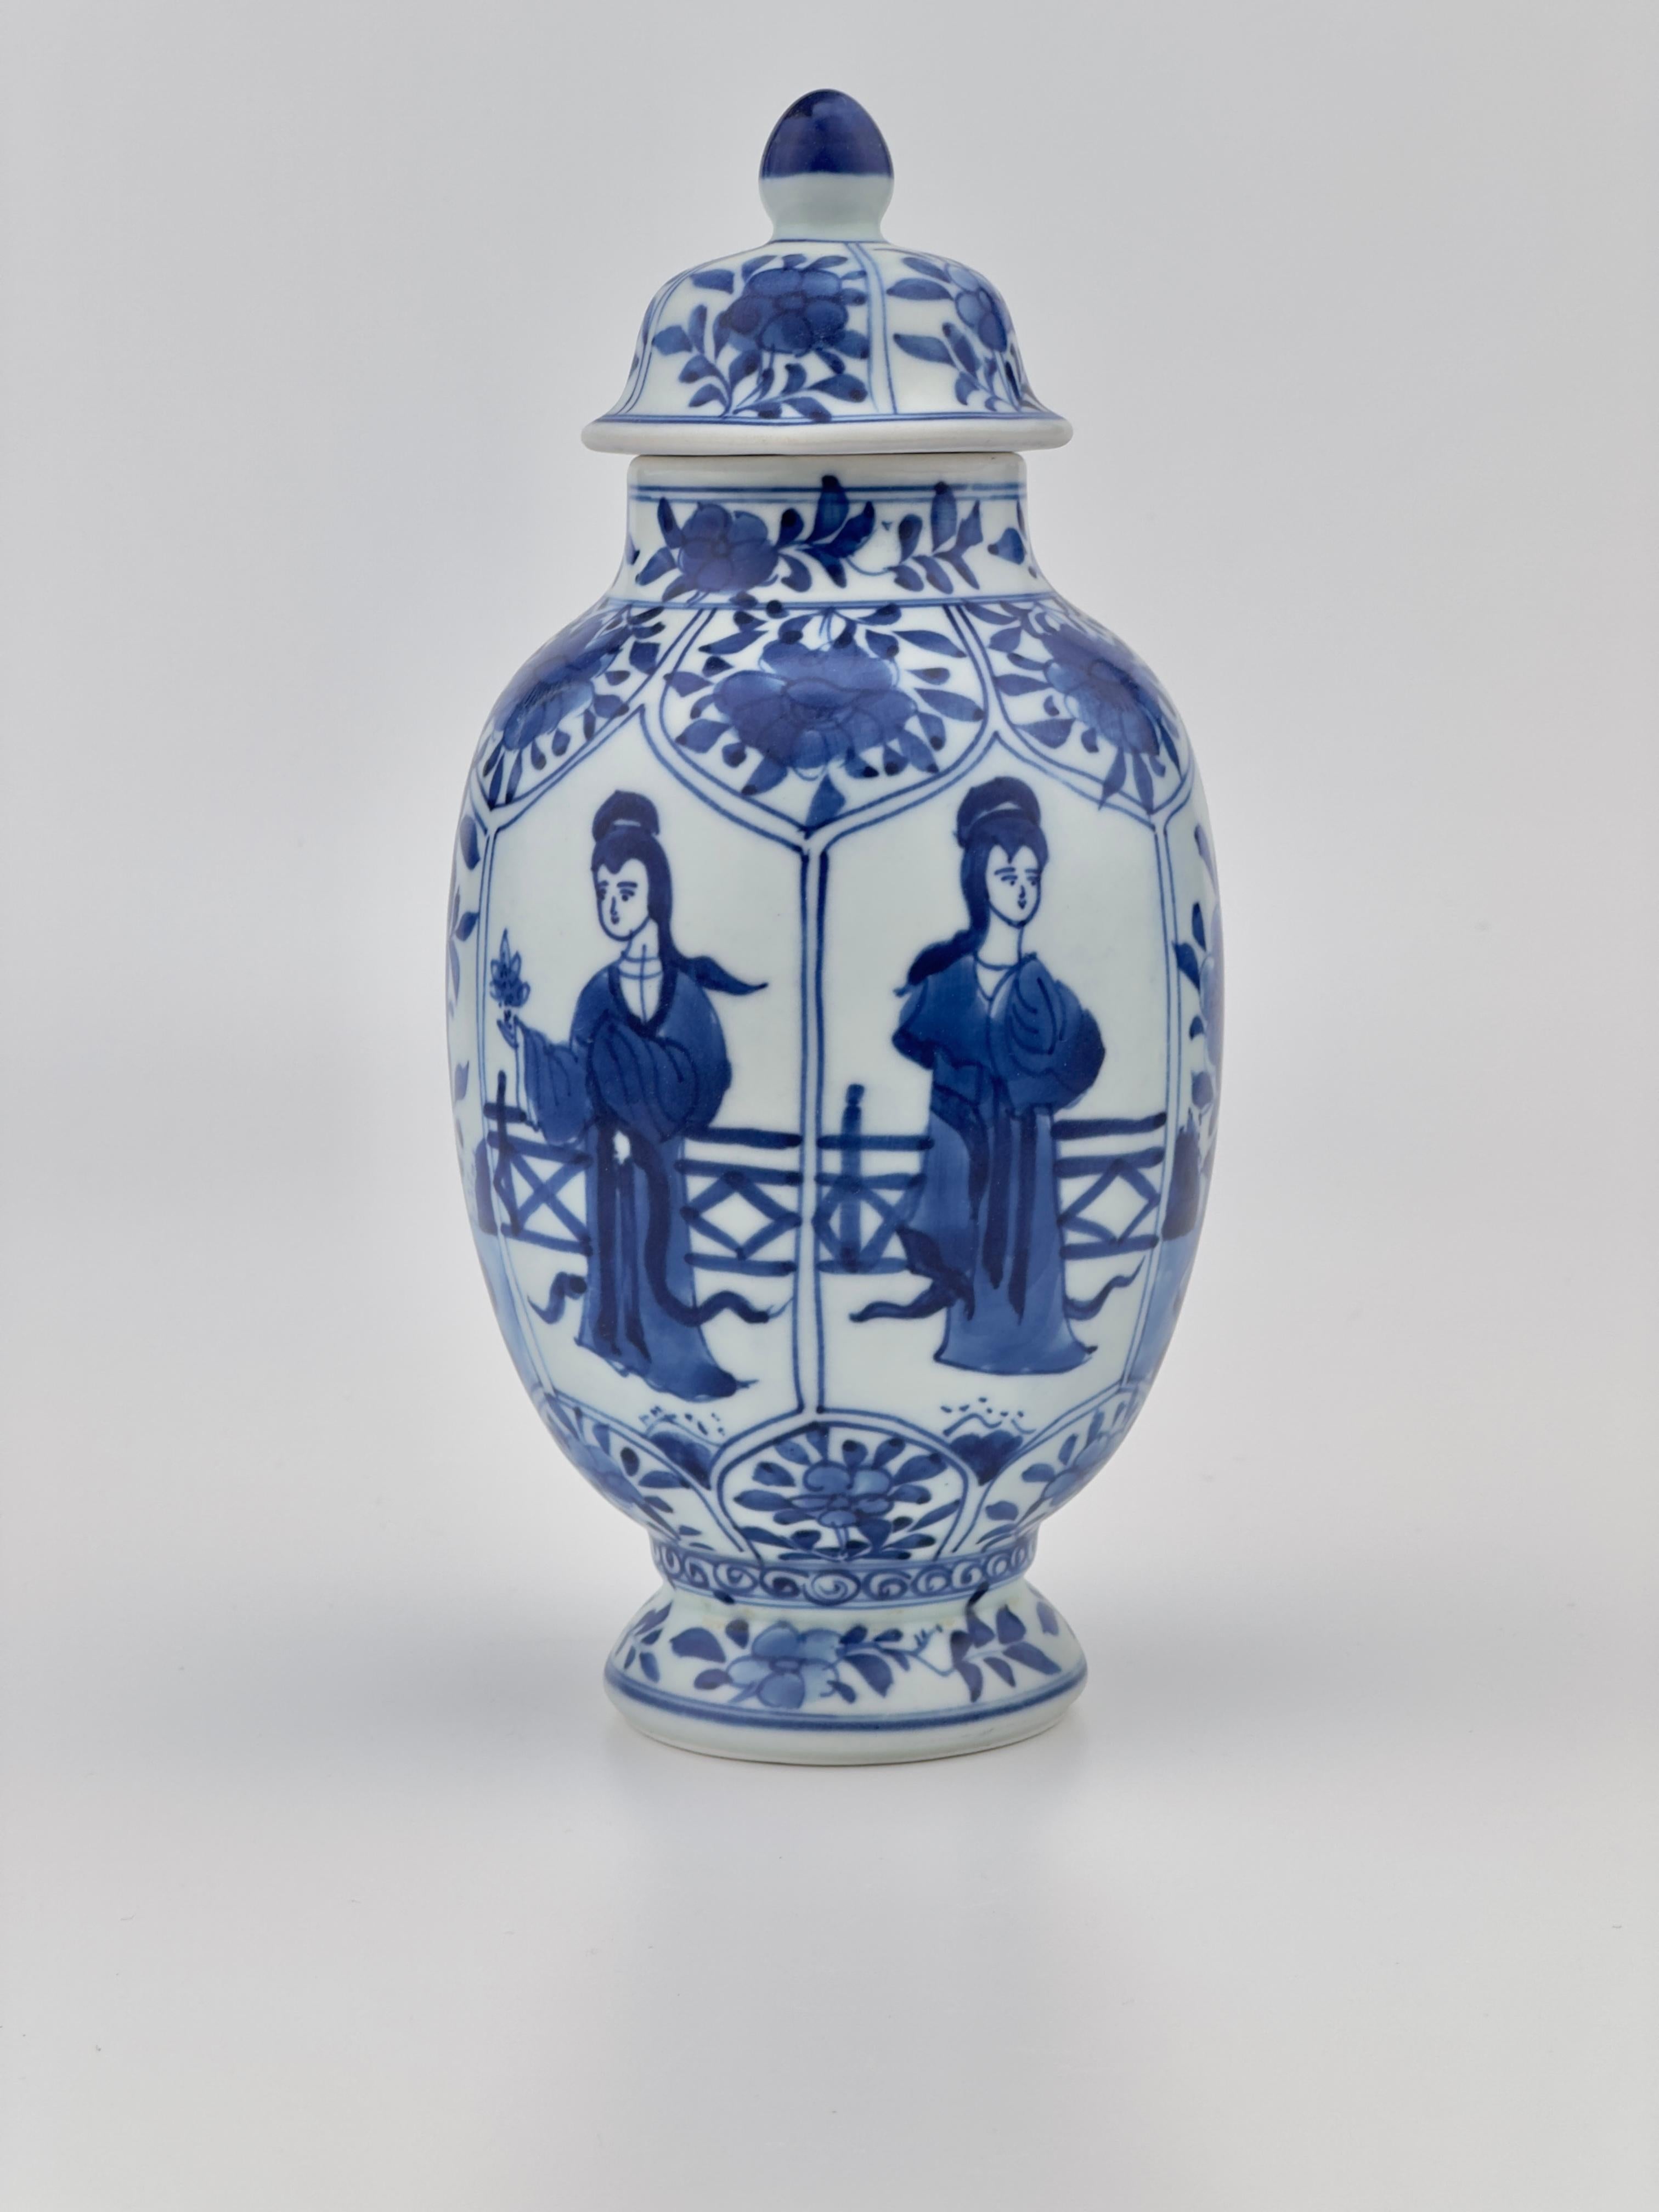 Naufrage de Vung Tau Vase à couvercle en porcelaine corallienne bleue sous-glacée. Une pièce presque parfaitement identique provenant de la famille royale vietnamienne et provenant des États-Unis a été vendue lors d'une autre vente aux enchères en